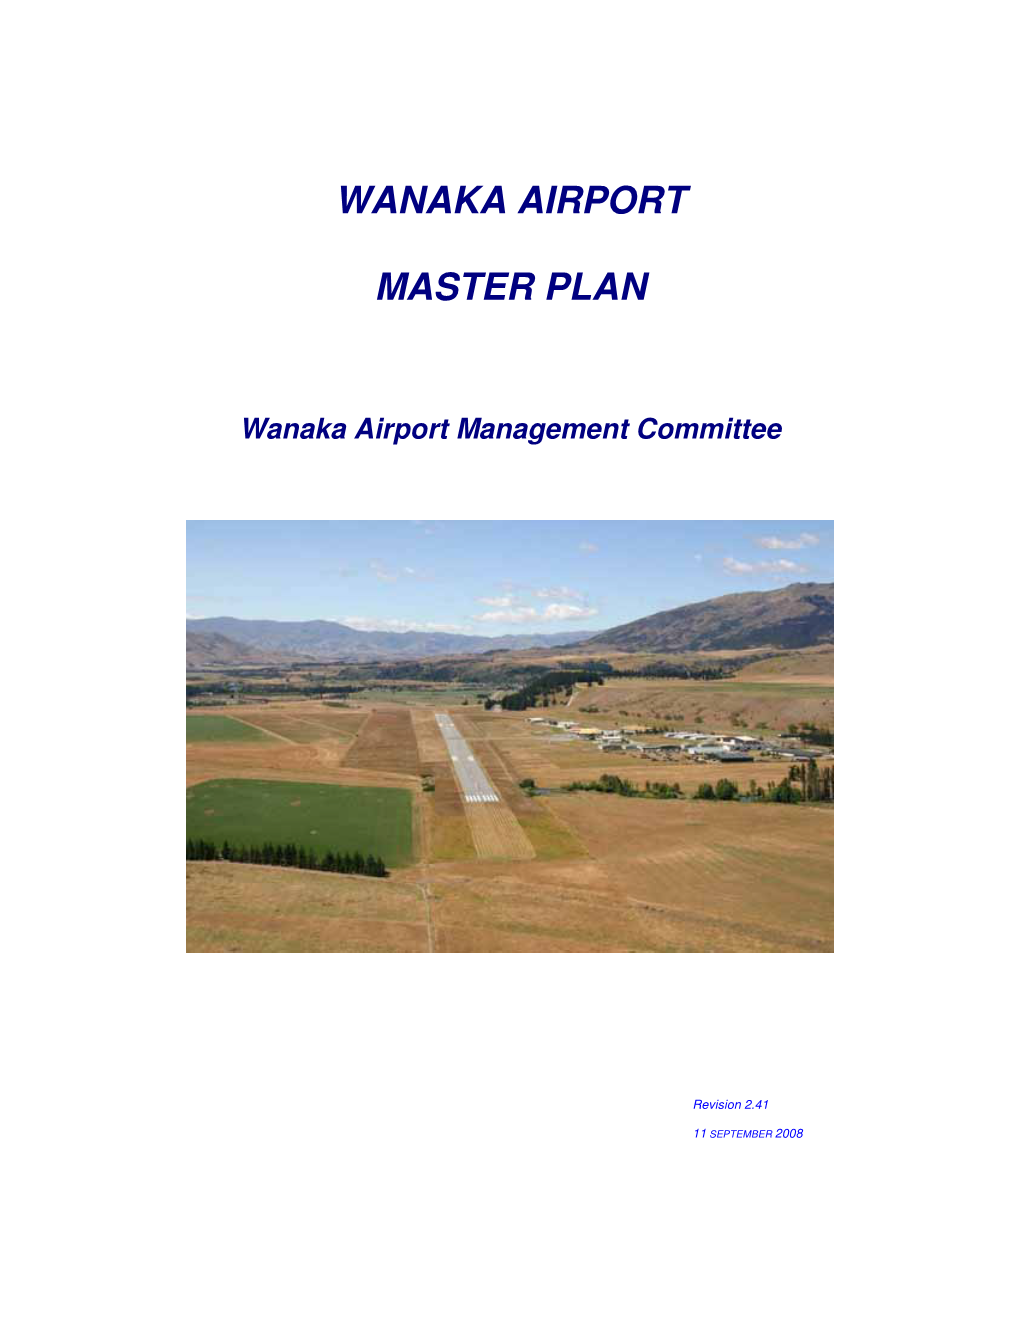 Wanaka Airport Master Plan WAMC